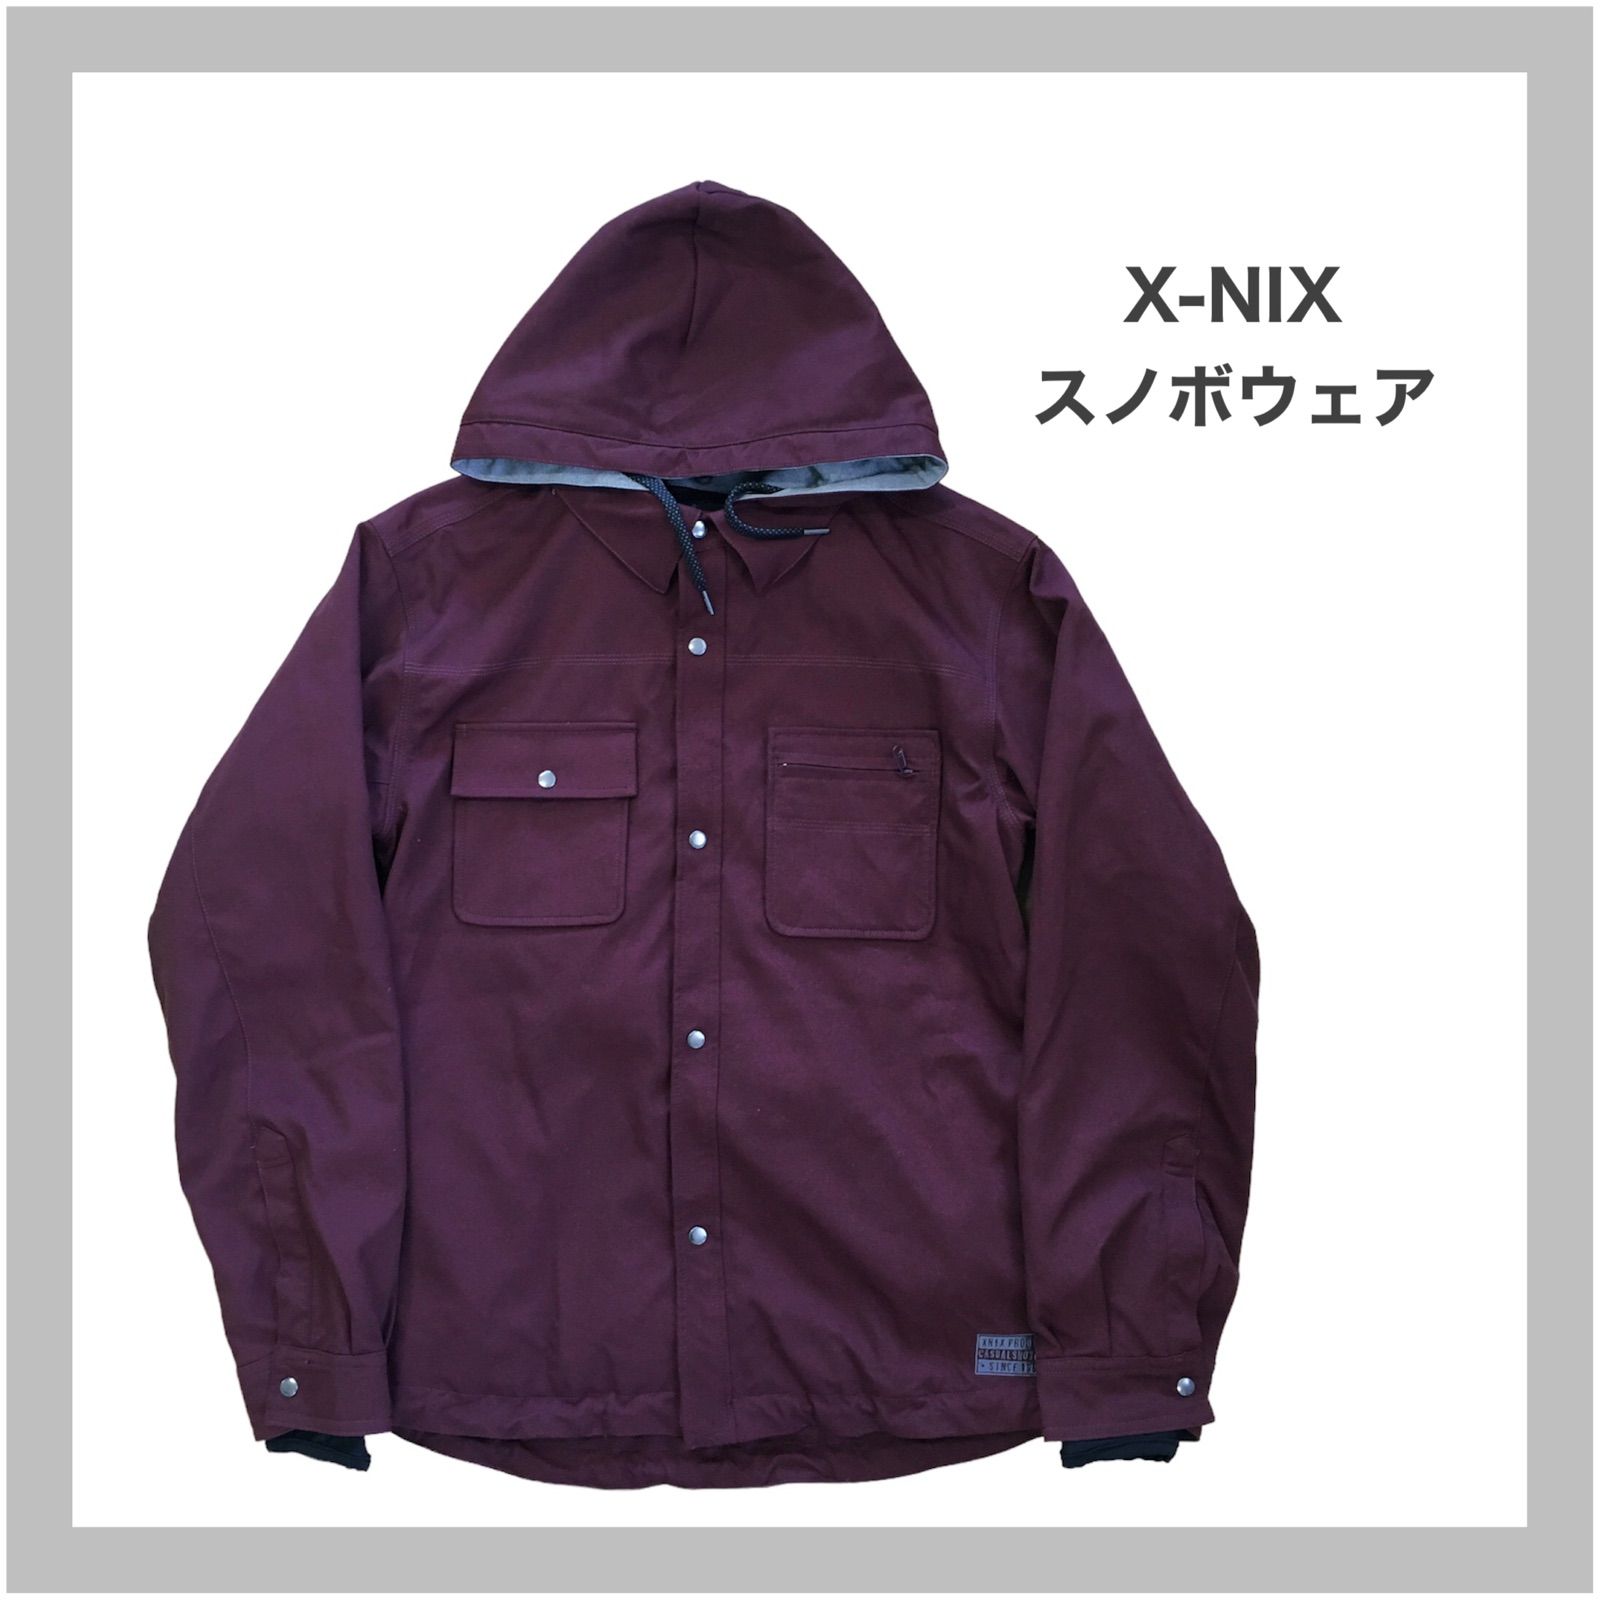 X-NIX エクスニクス スノーボード ウェア ジャケット Lサイズ